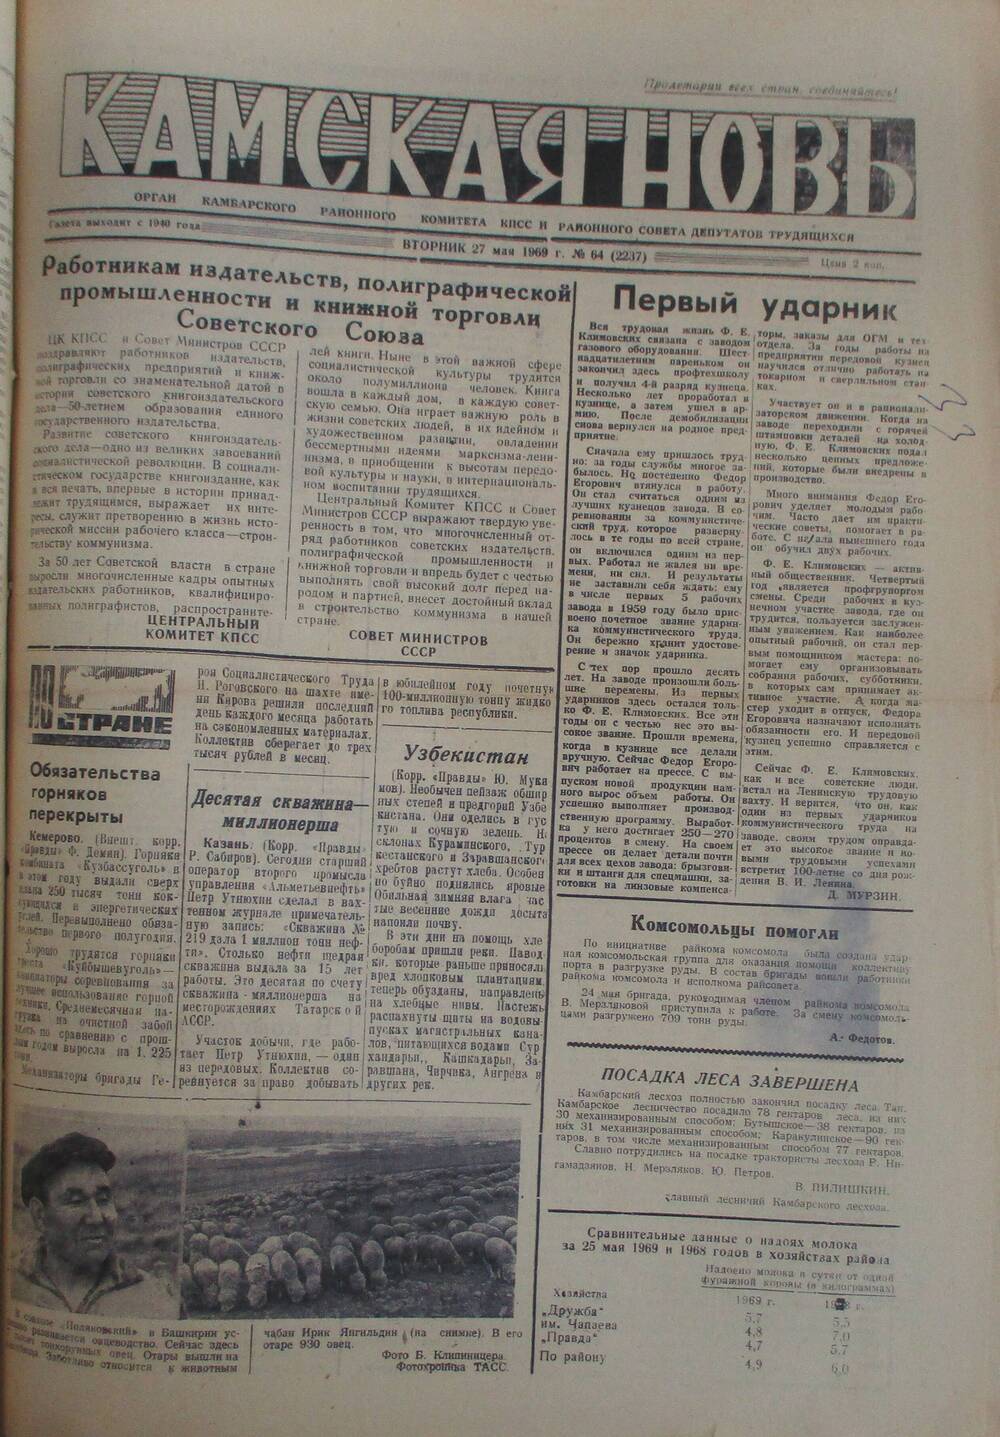 Газеты Камская новь за 1969 год, орган Камбарского райсовета и  РККПСС, с №1 по №66, с №68 по №156. №64.